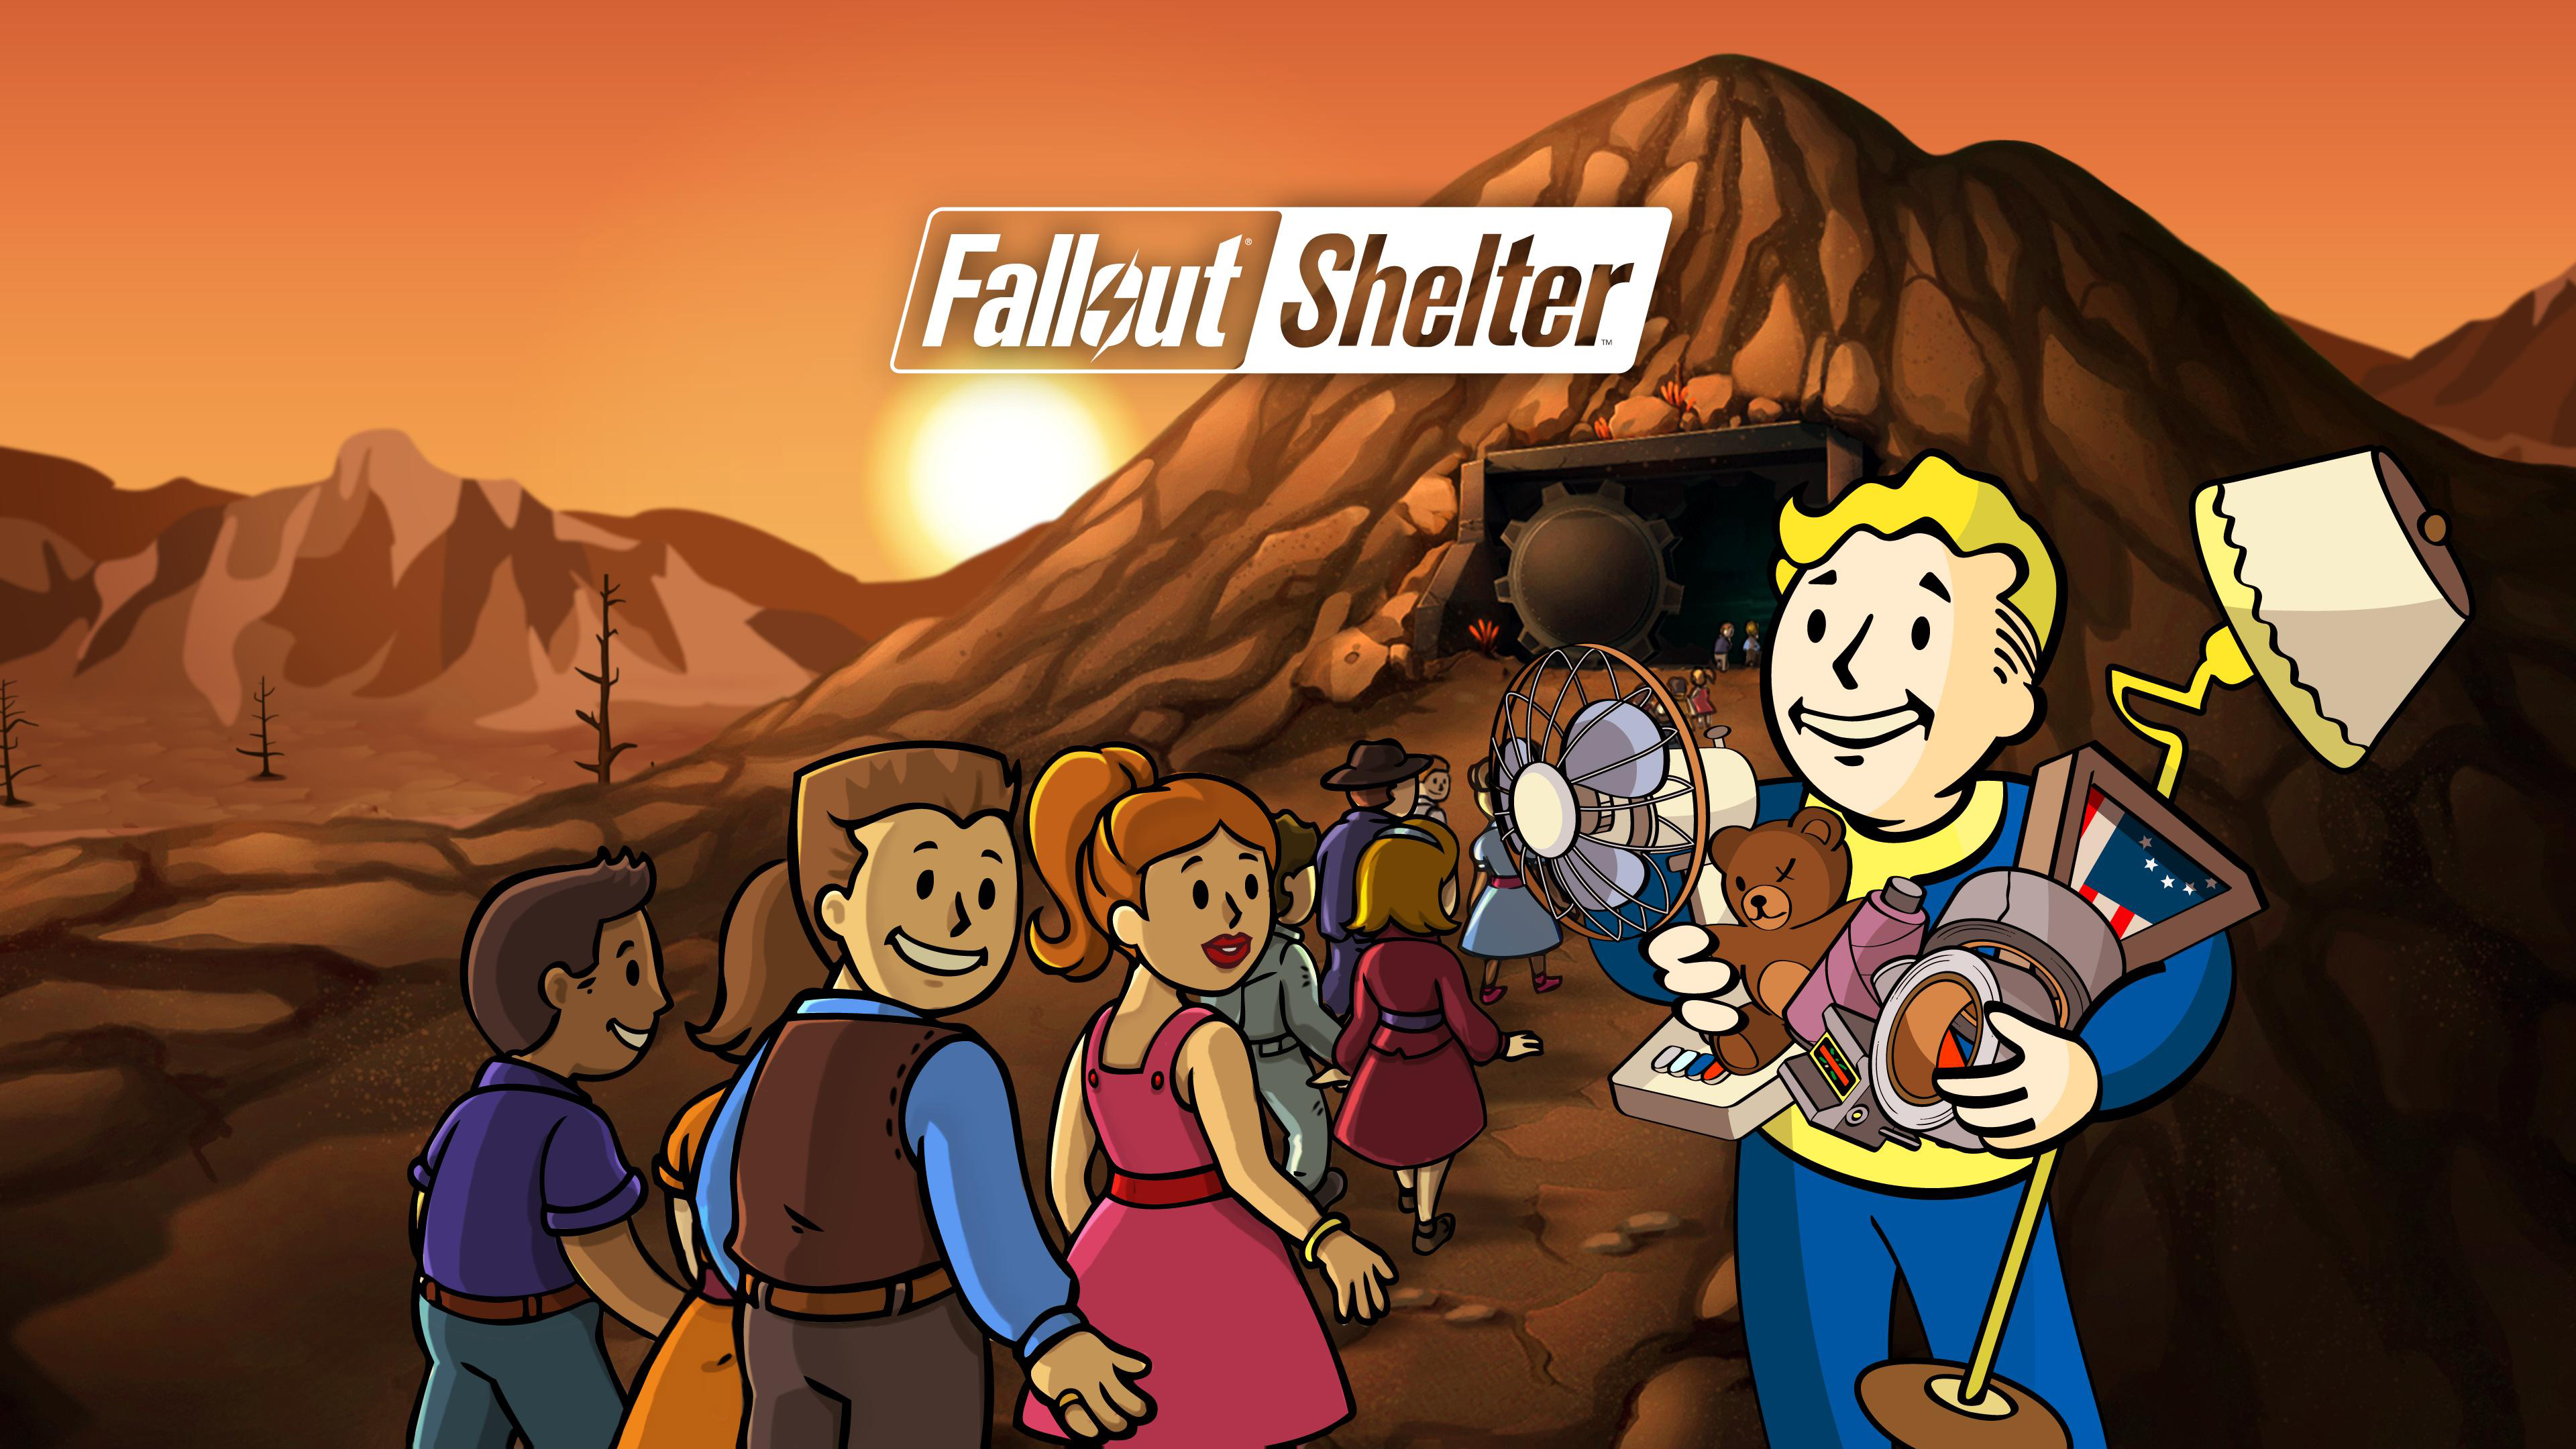 Прохождение Cтим версии Fallout Shelter # 48